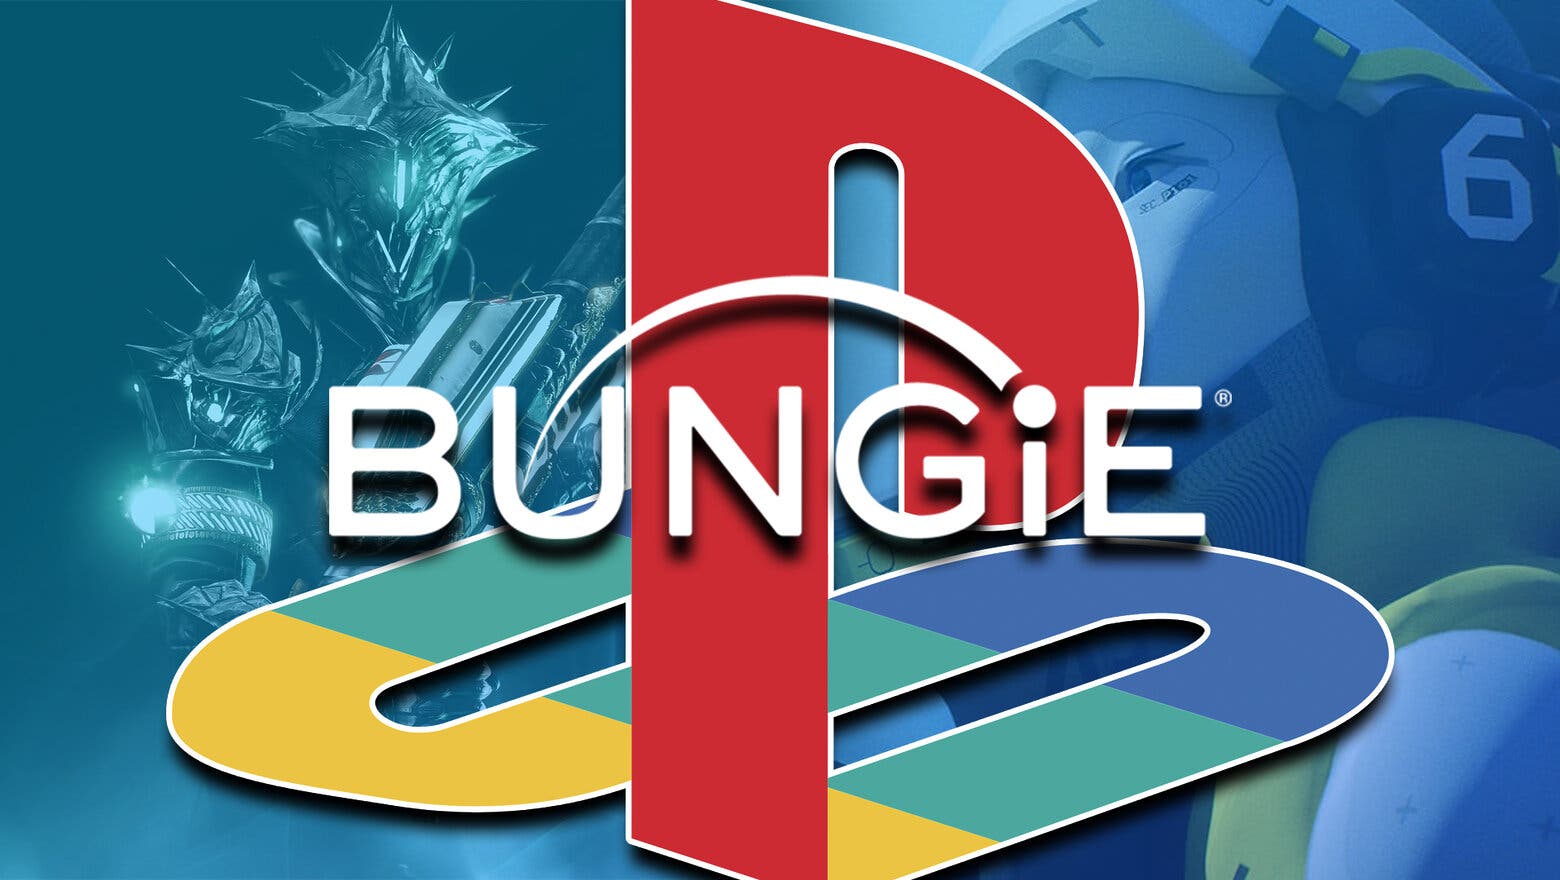 Logos de PlayStation y Bungie superpuestos